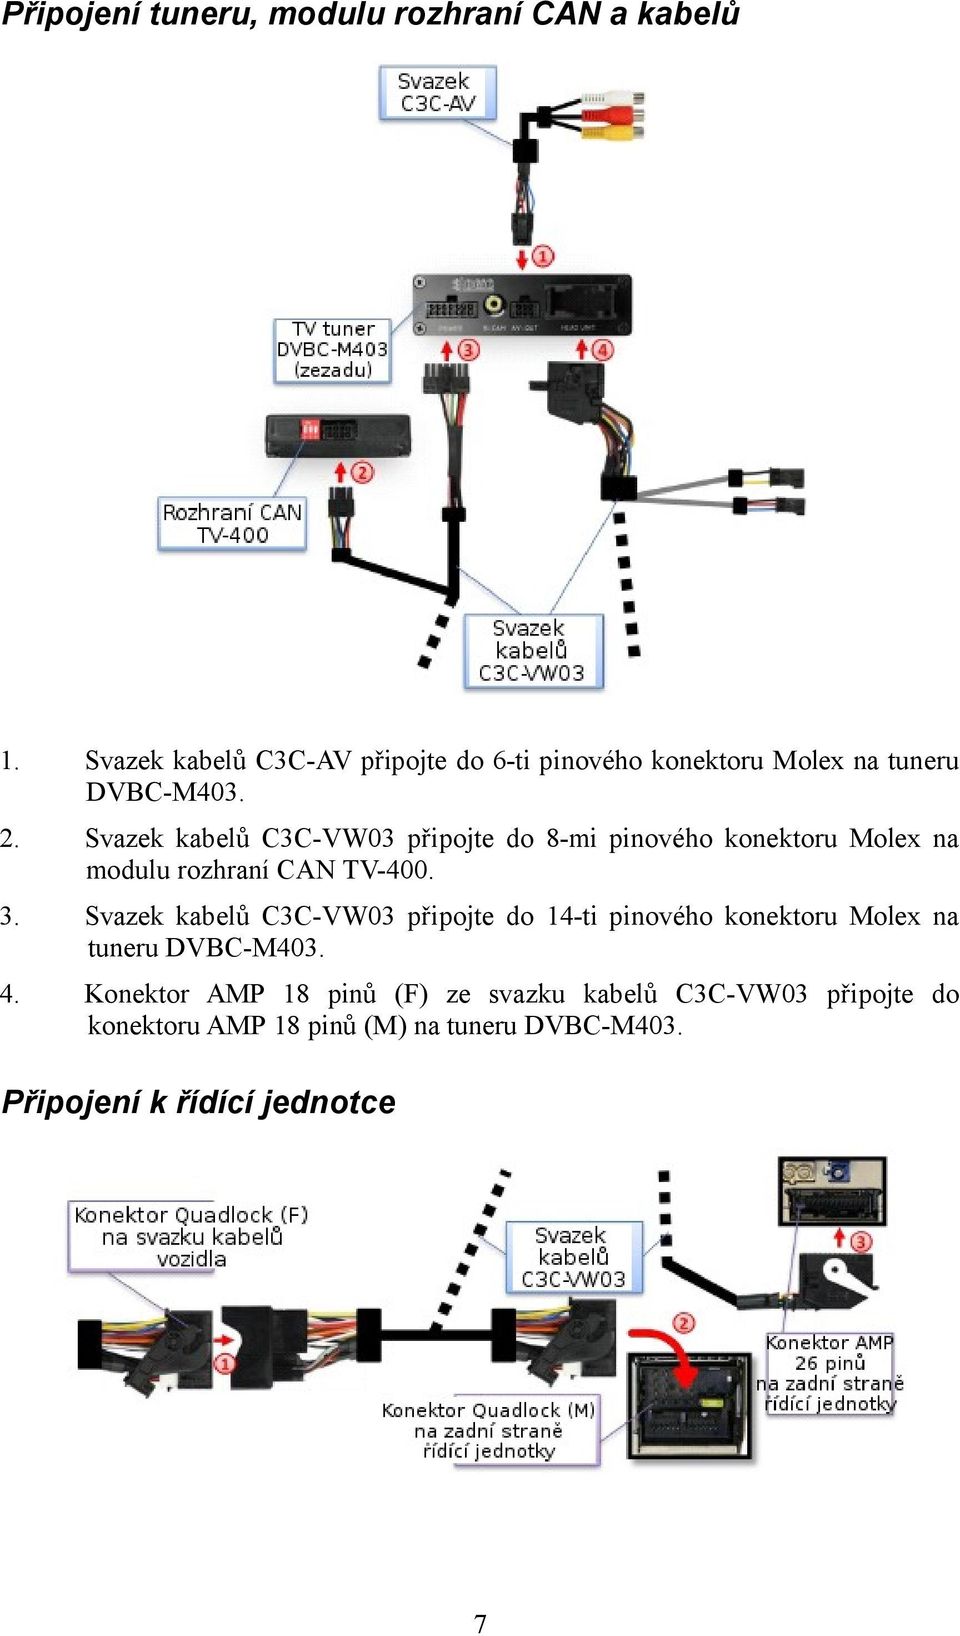 Svazek kabelů C3C-VW03 připojte do 8-mi pinového konektoru Molex na modulu rozhraní CAN TV-400. 3.